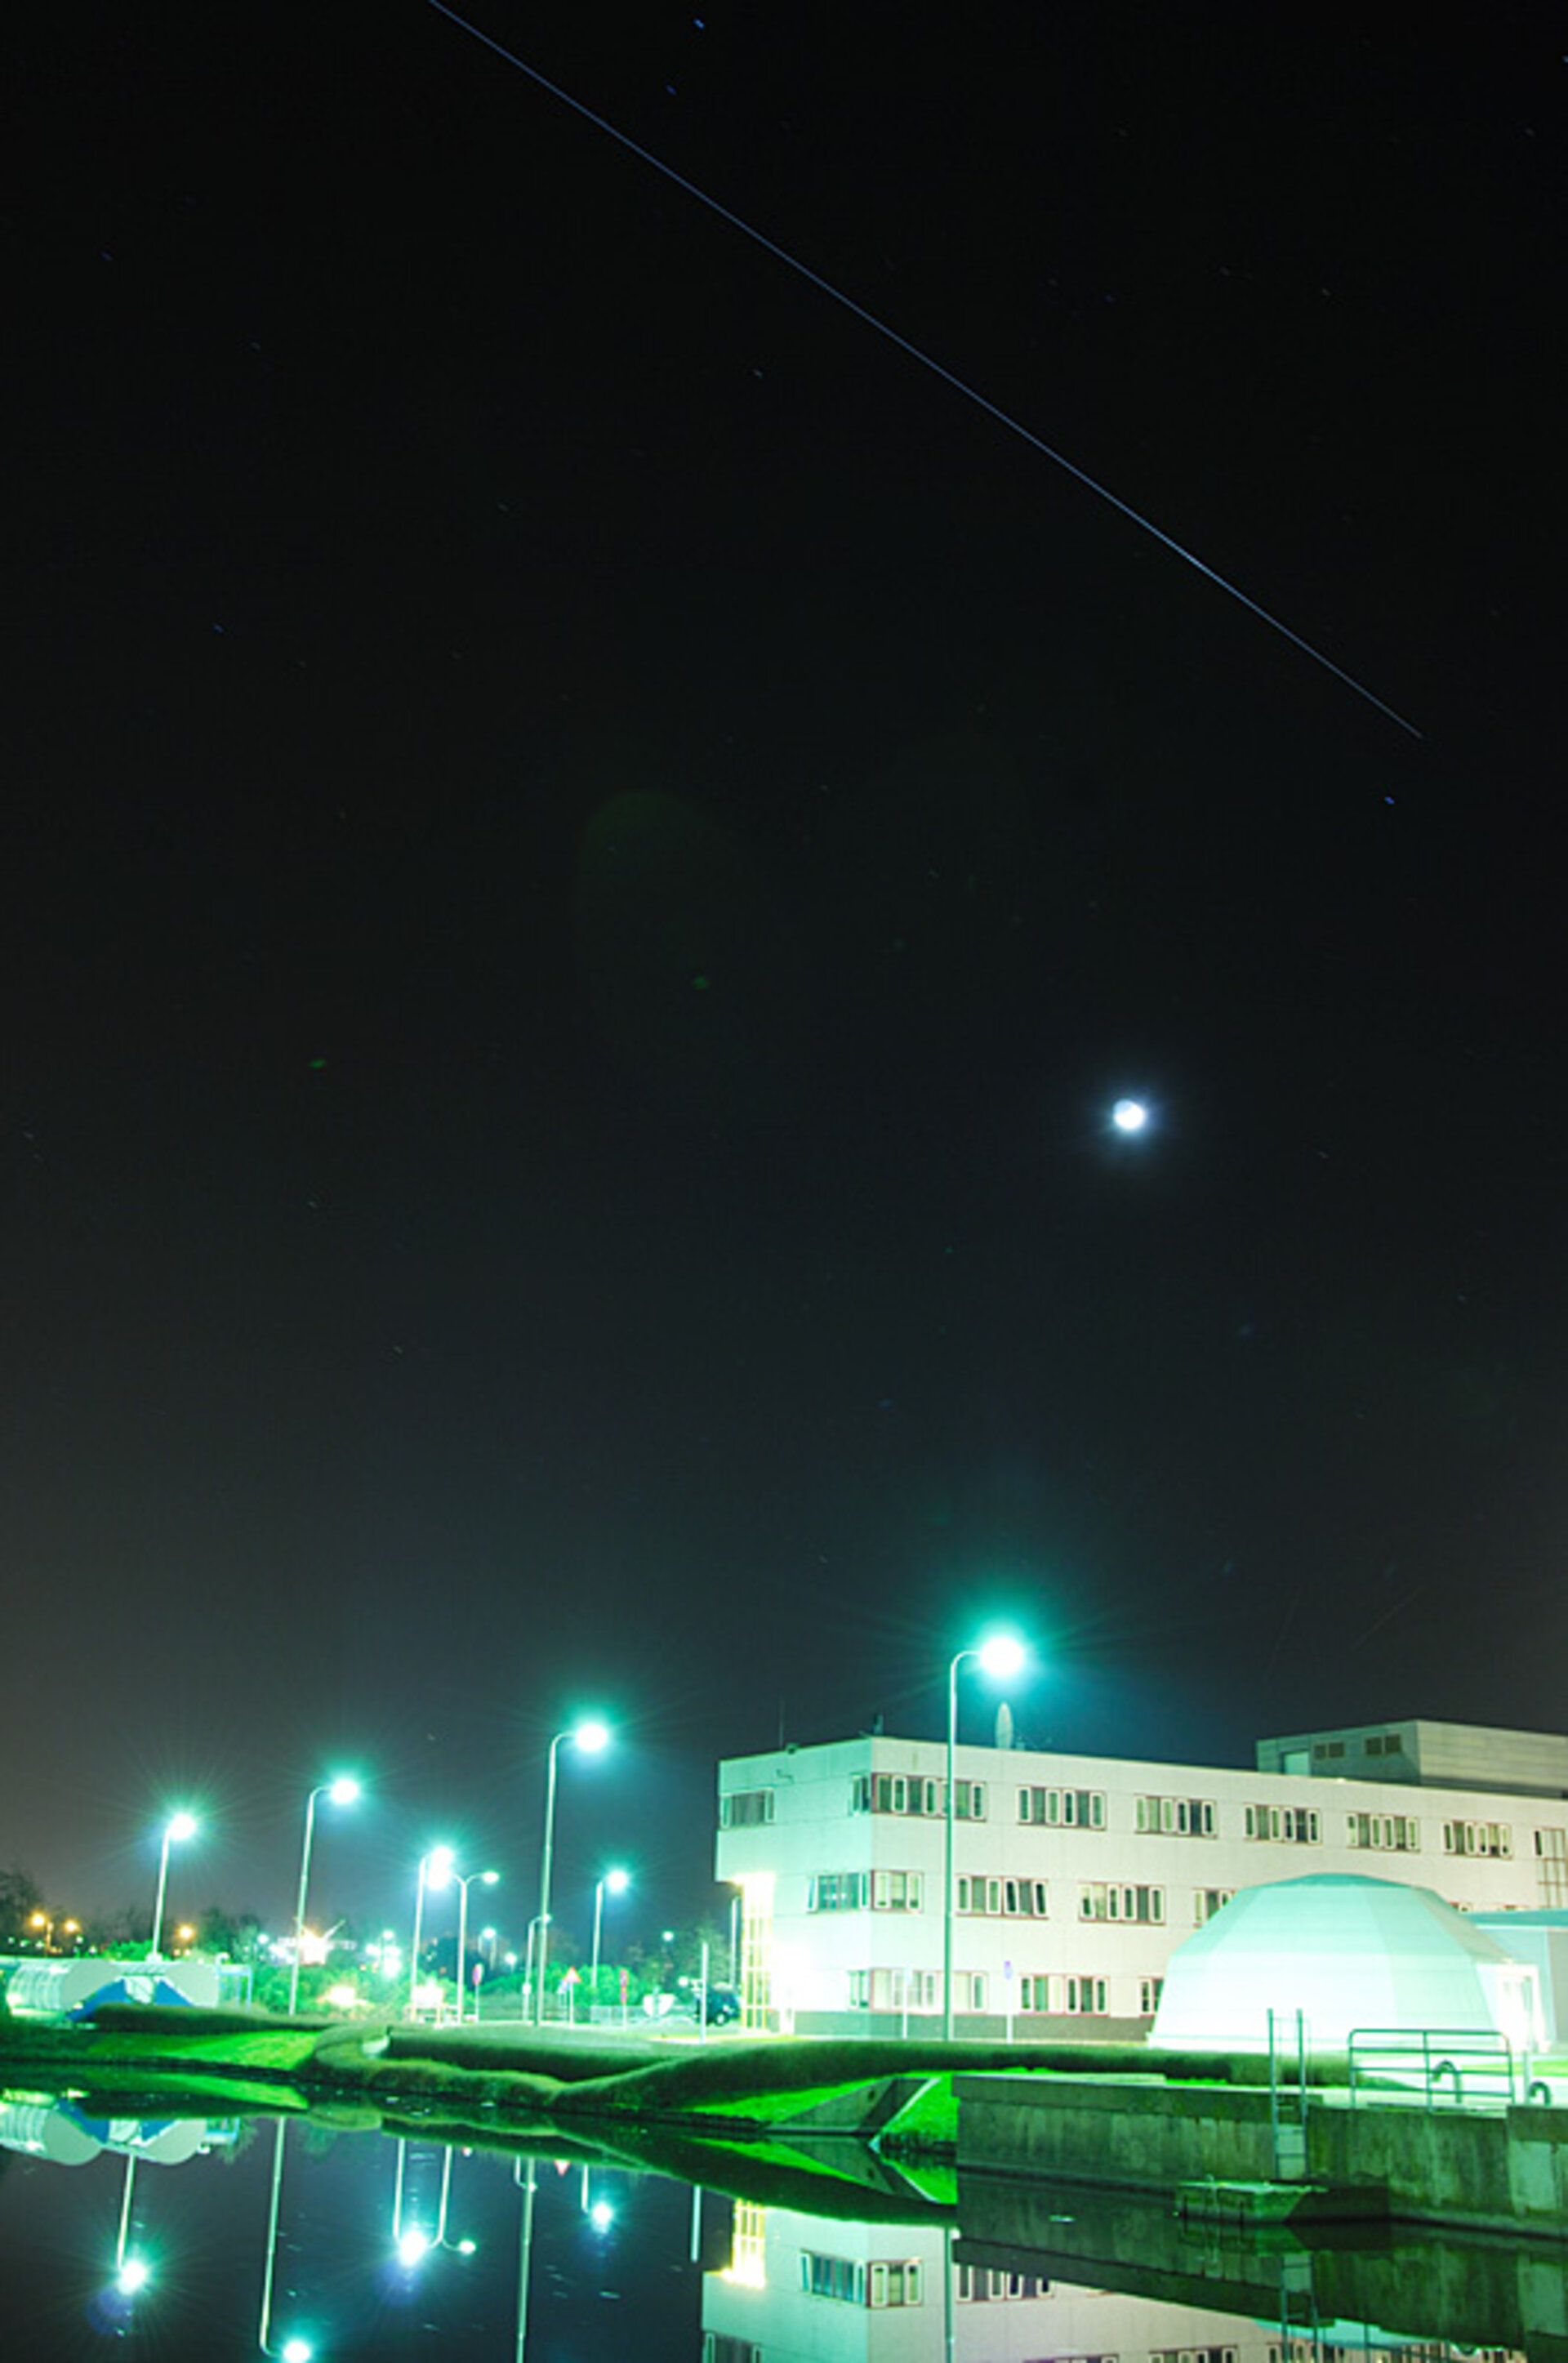 ISS vastgelegd boven ESTEC, om 19:37